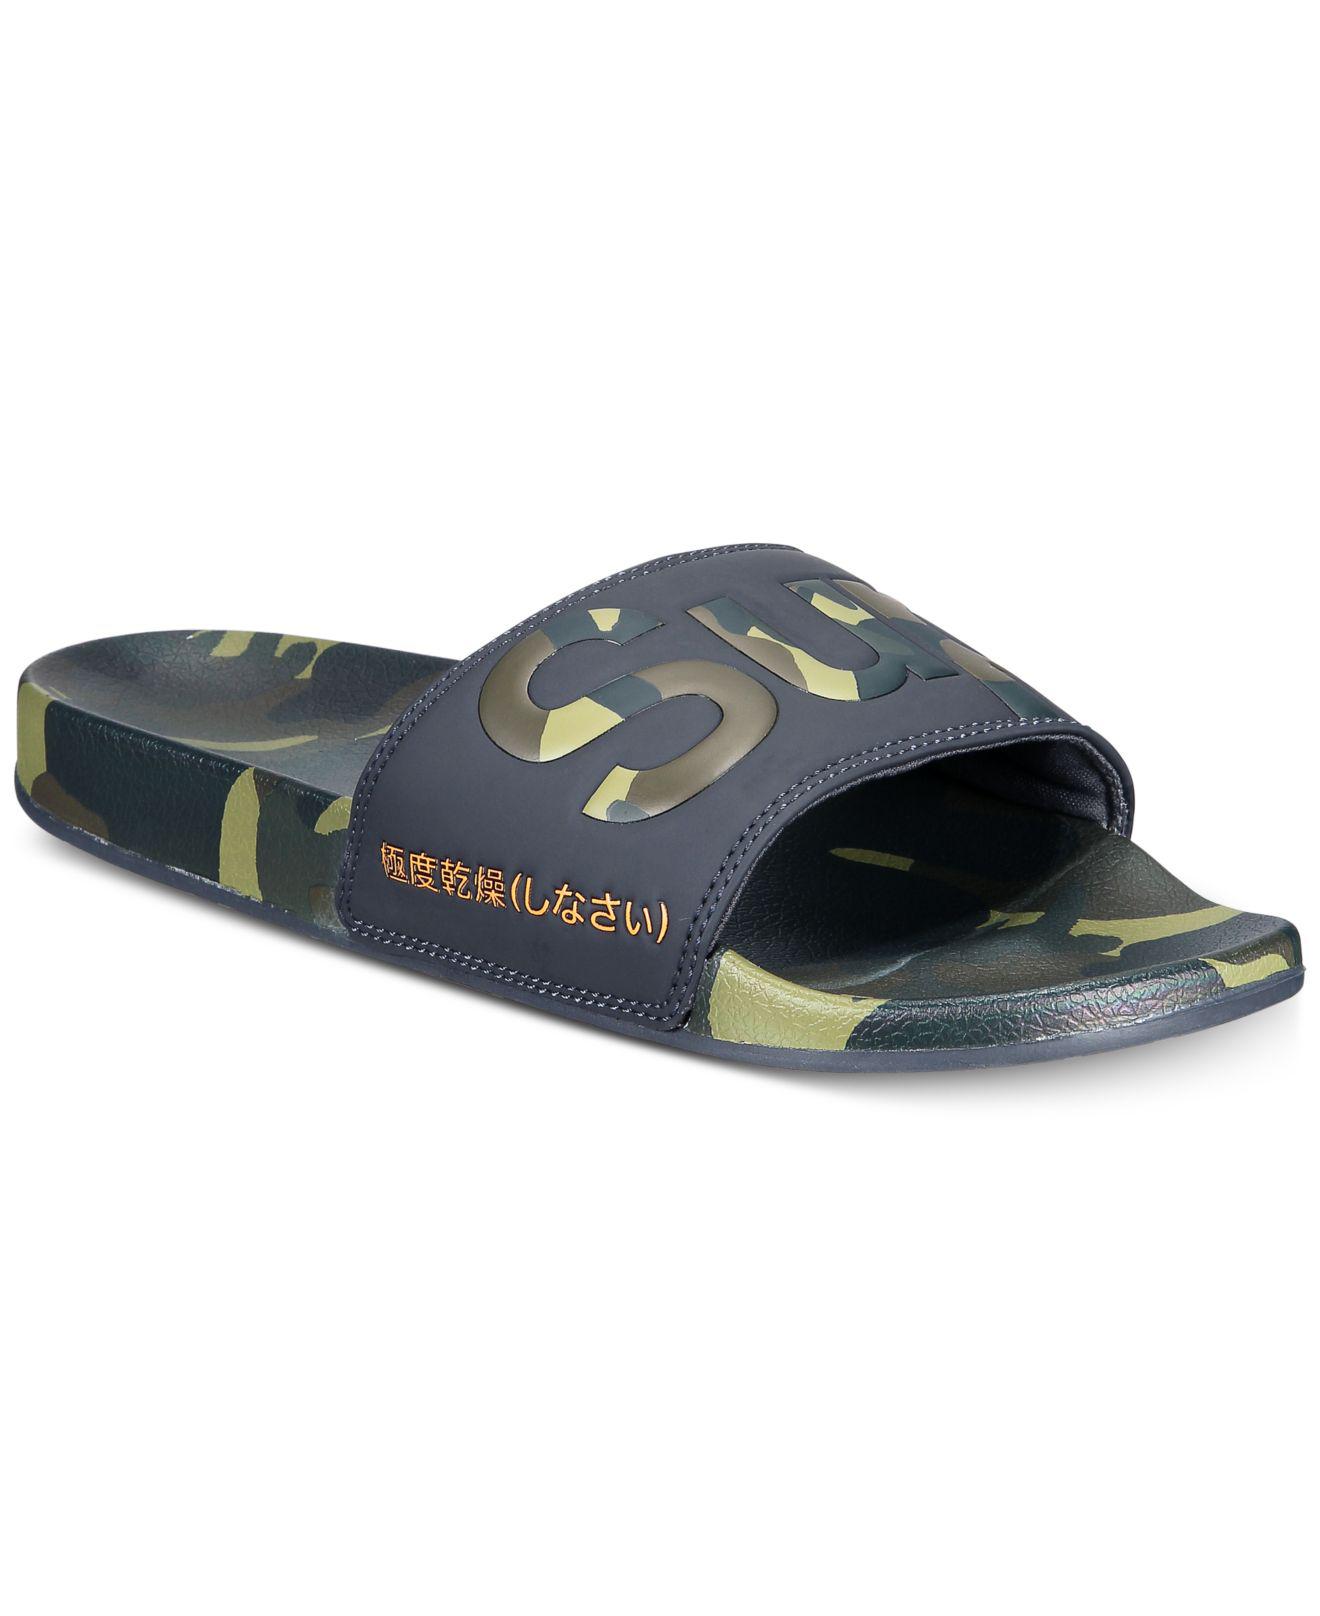 Superdry Aop Beach Slide Sandals for Men - Lyst